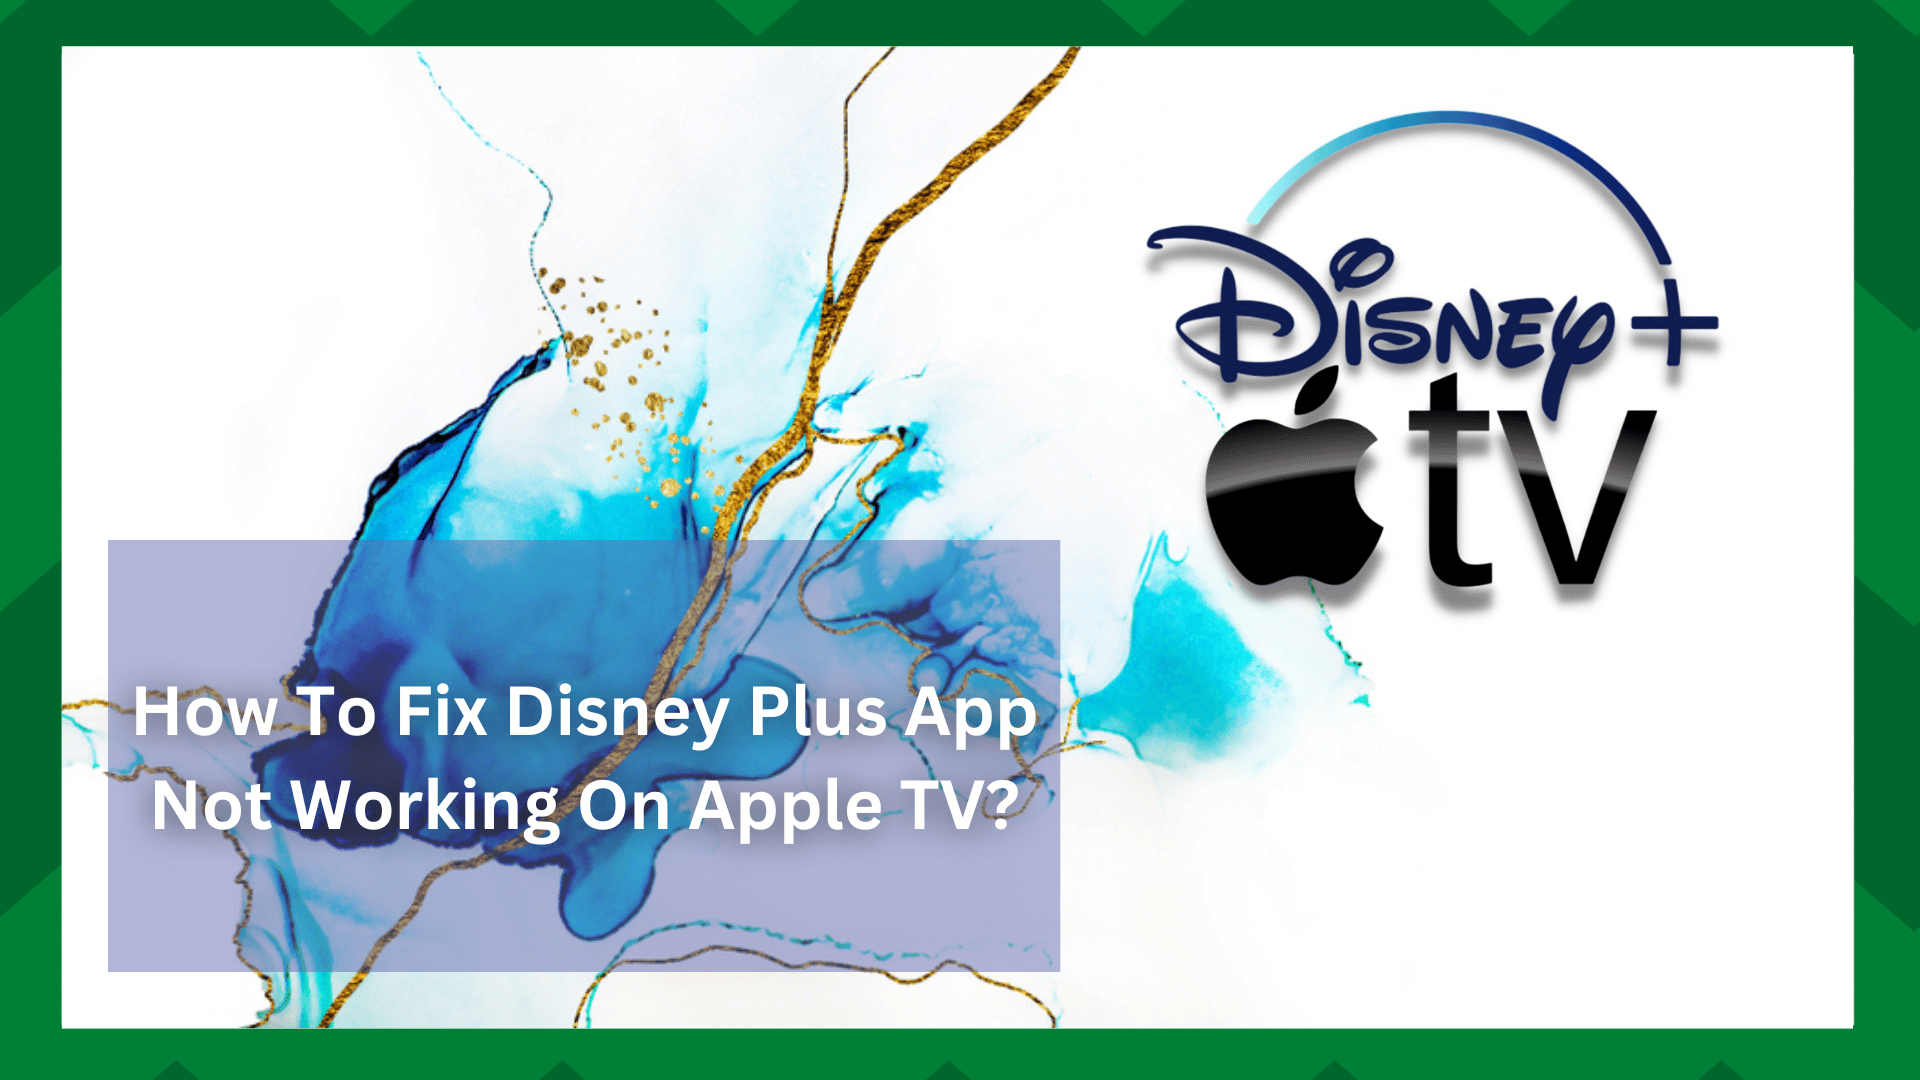 4 võimalikku lahendust, kui Disney Plus App ei tööta Apple TV-s